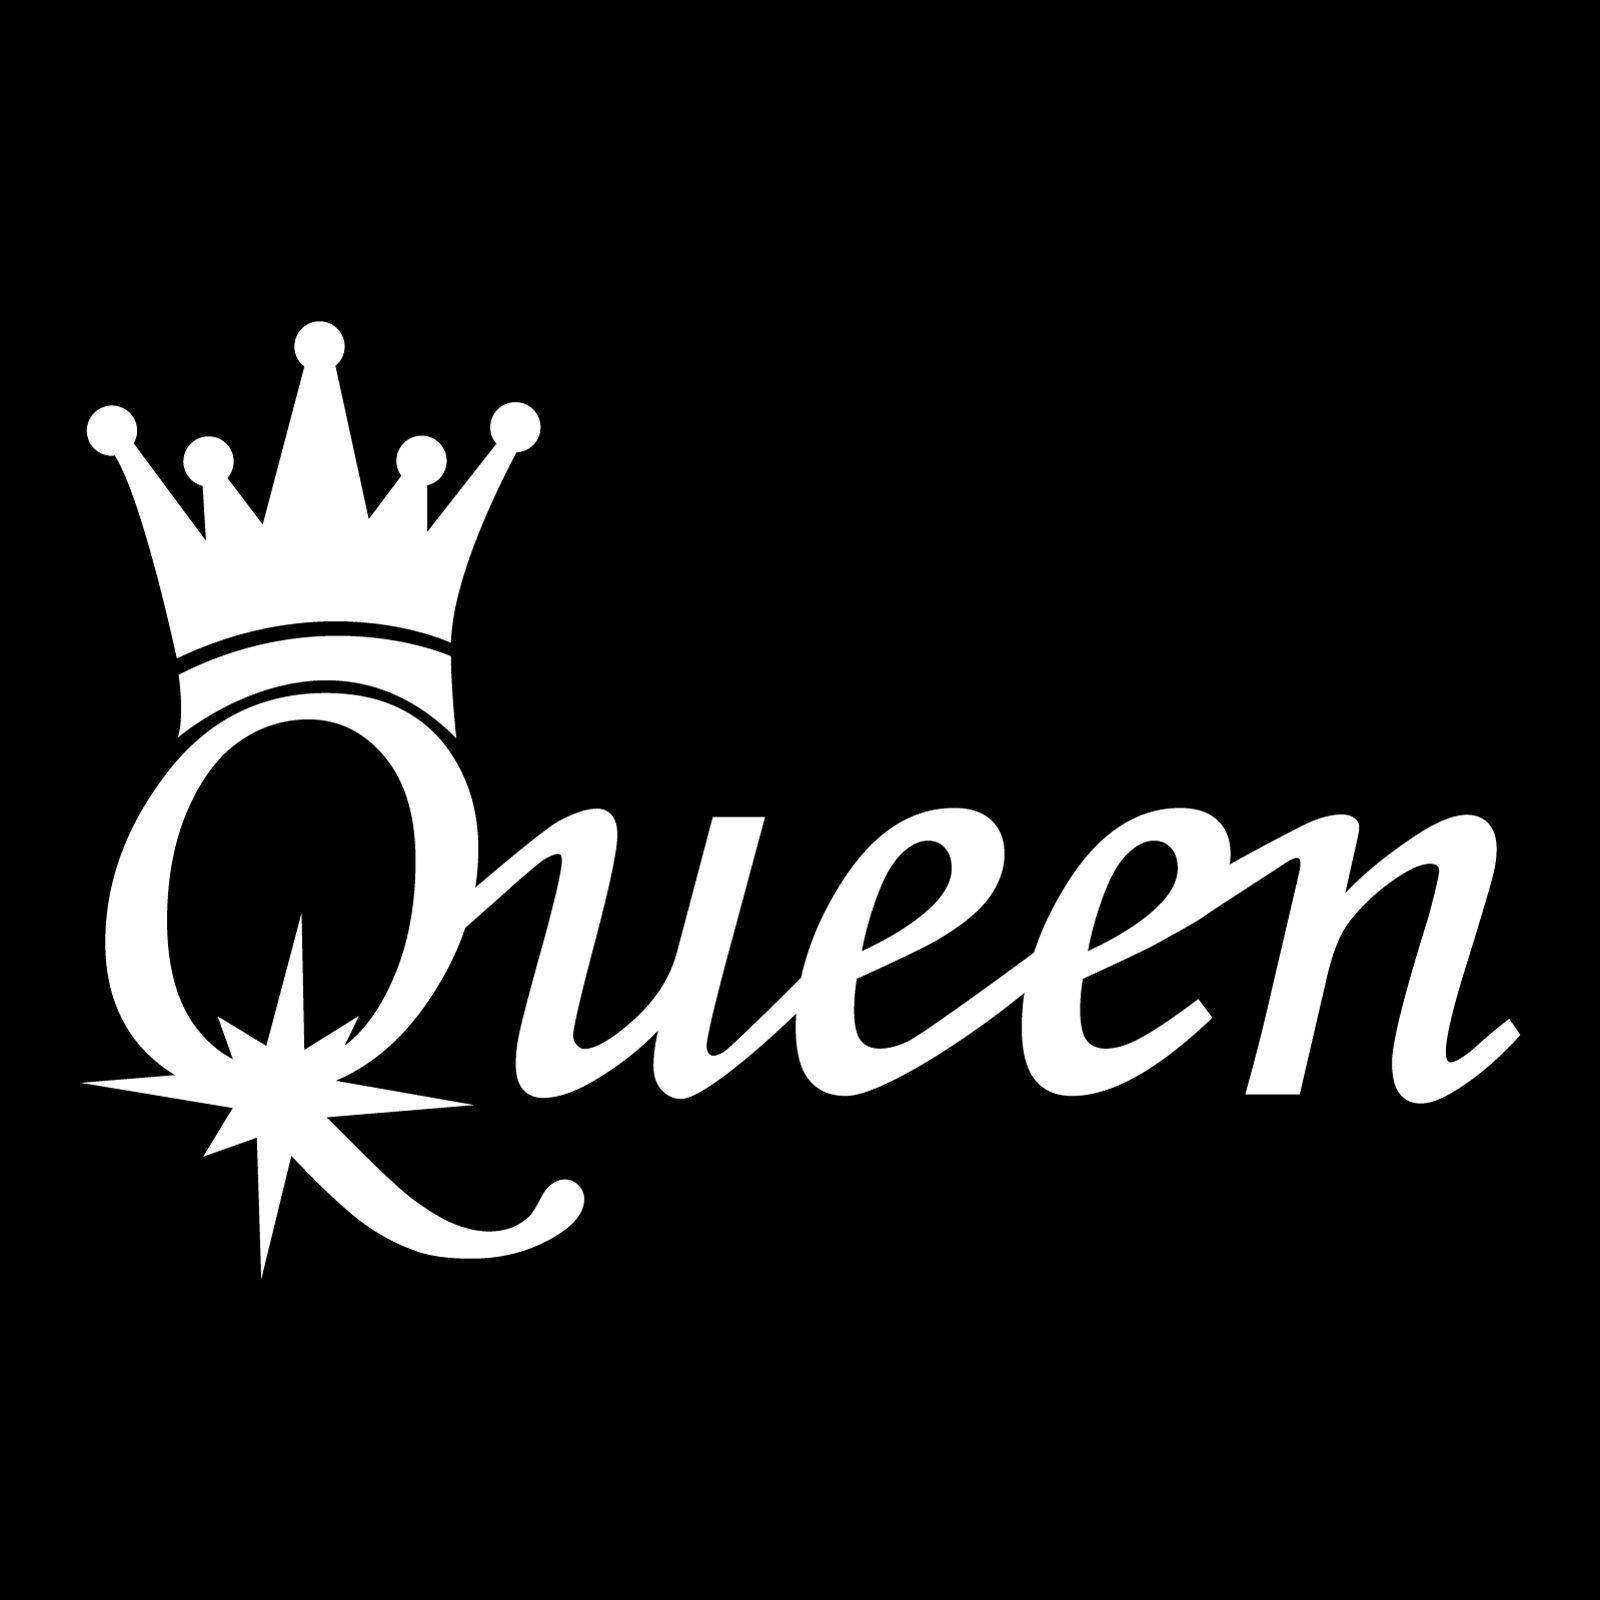 Free Black Queen Wallpaper Downloads, [100+] Black Queen Wallpapers for  FREE 